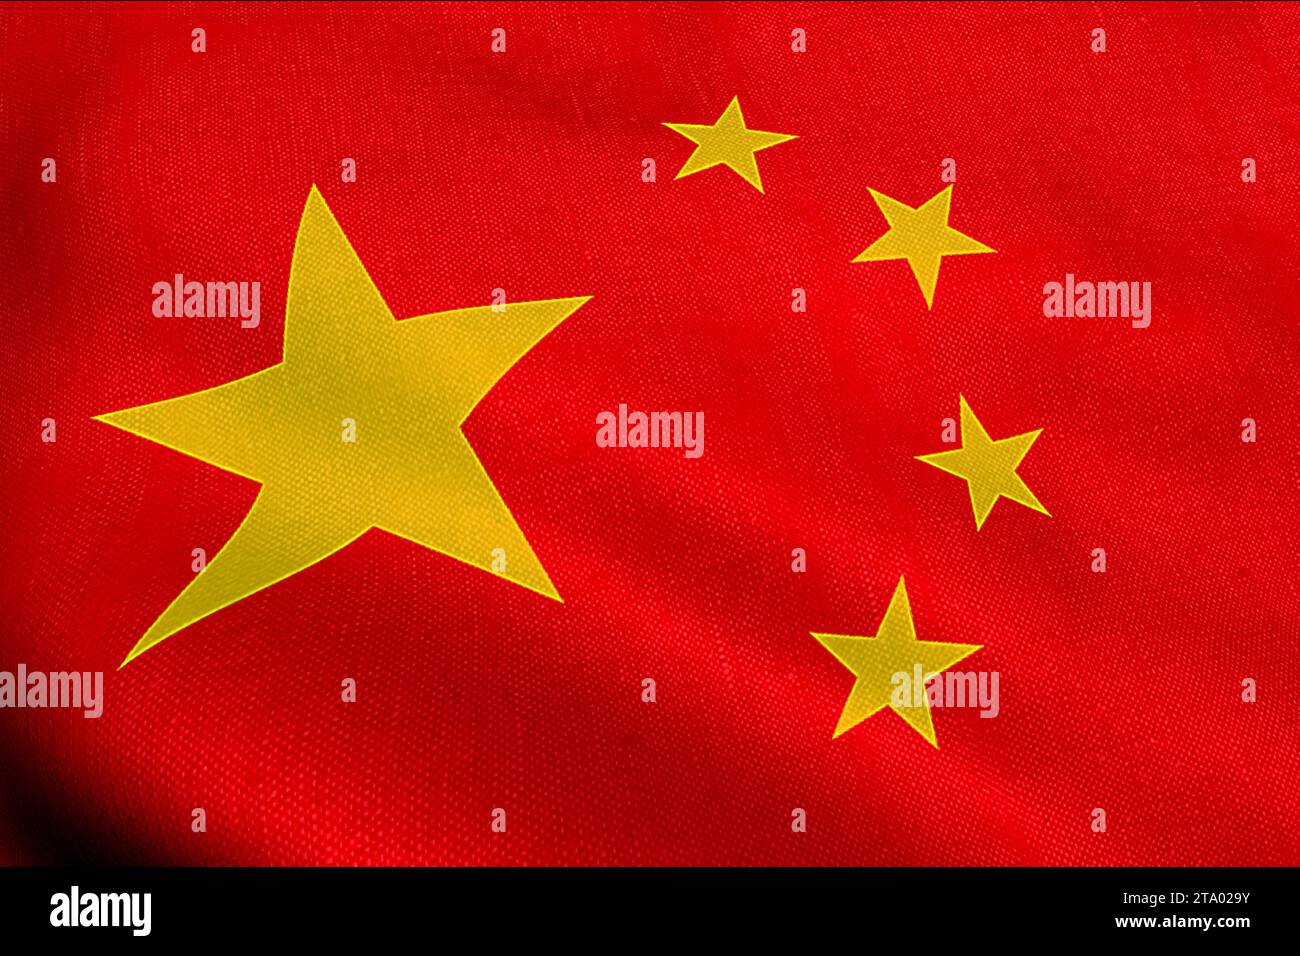 ondulation de texture de tissu avec la couleur rouge du drapeau du peuple de la république de chine, drapeau de texture réelle Banque D'Images